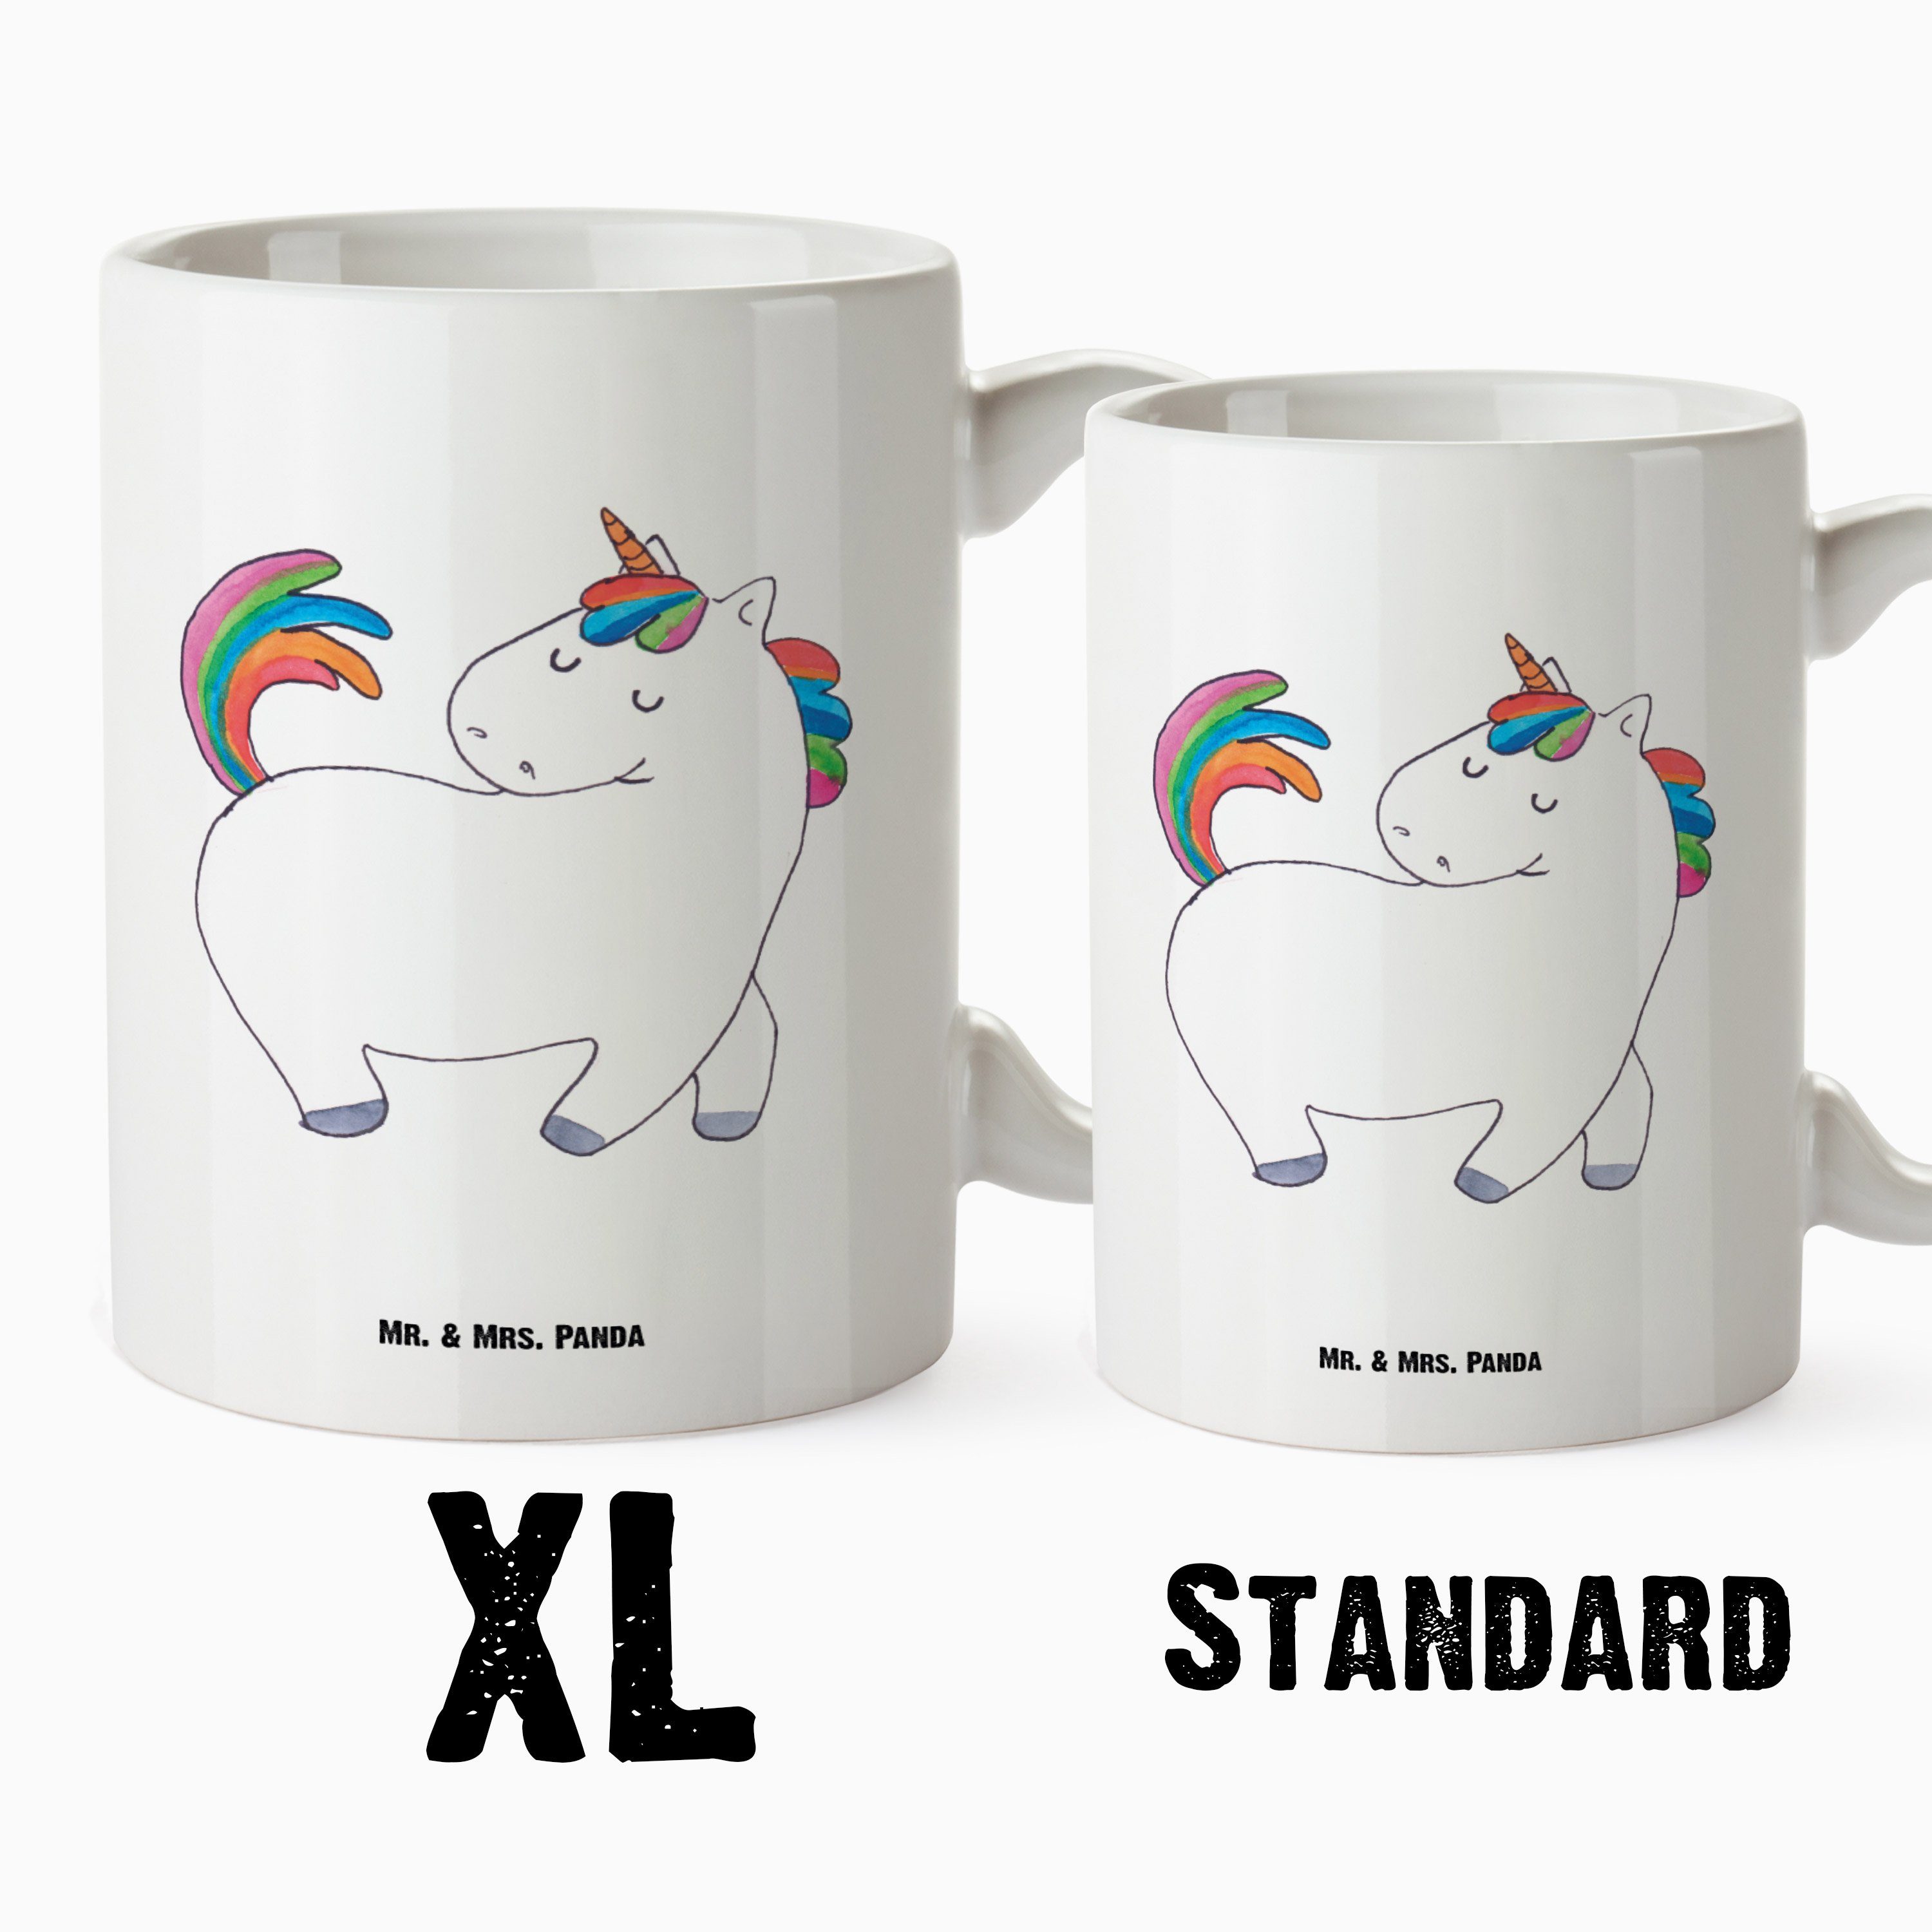 Mr. & Mrs. Panda anders, - Einhorn Keramik Becher, XL XL XL Geschenk, Tasse Tasse - Teetasse, Weiß stolzierend